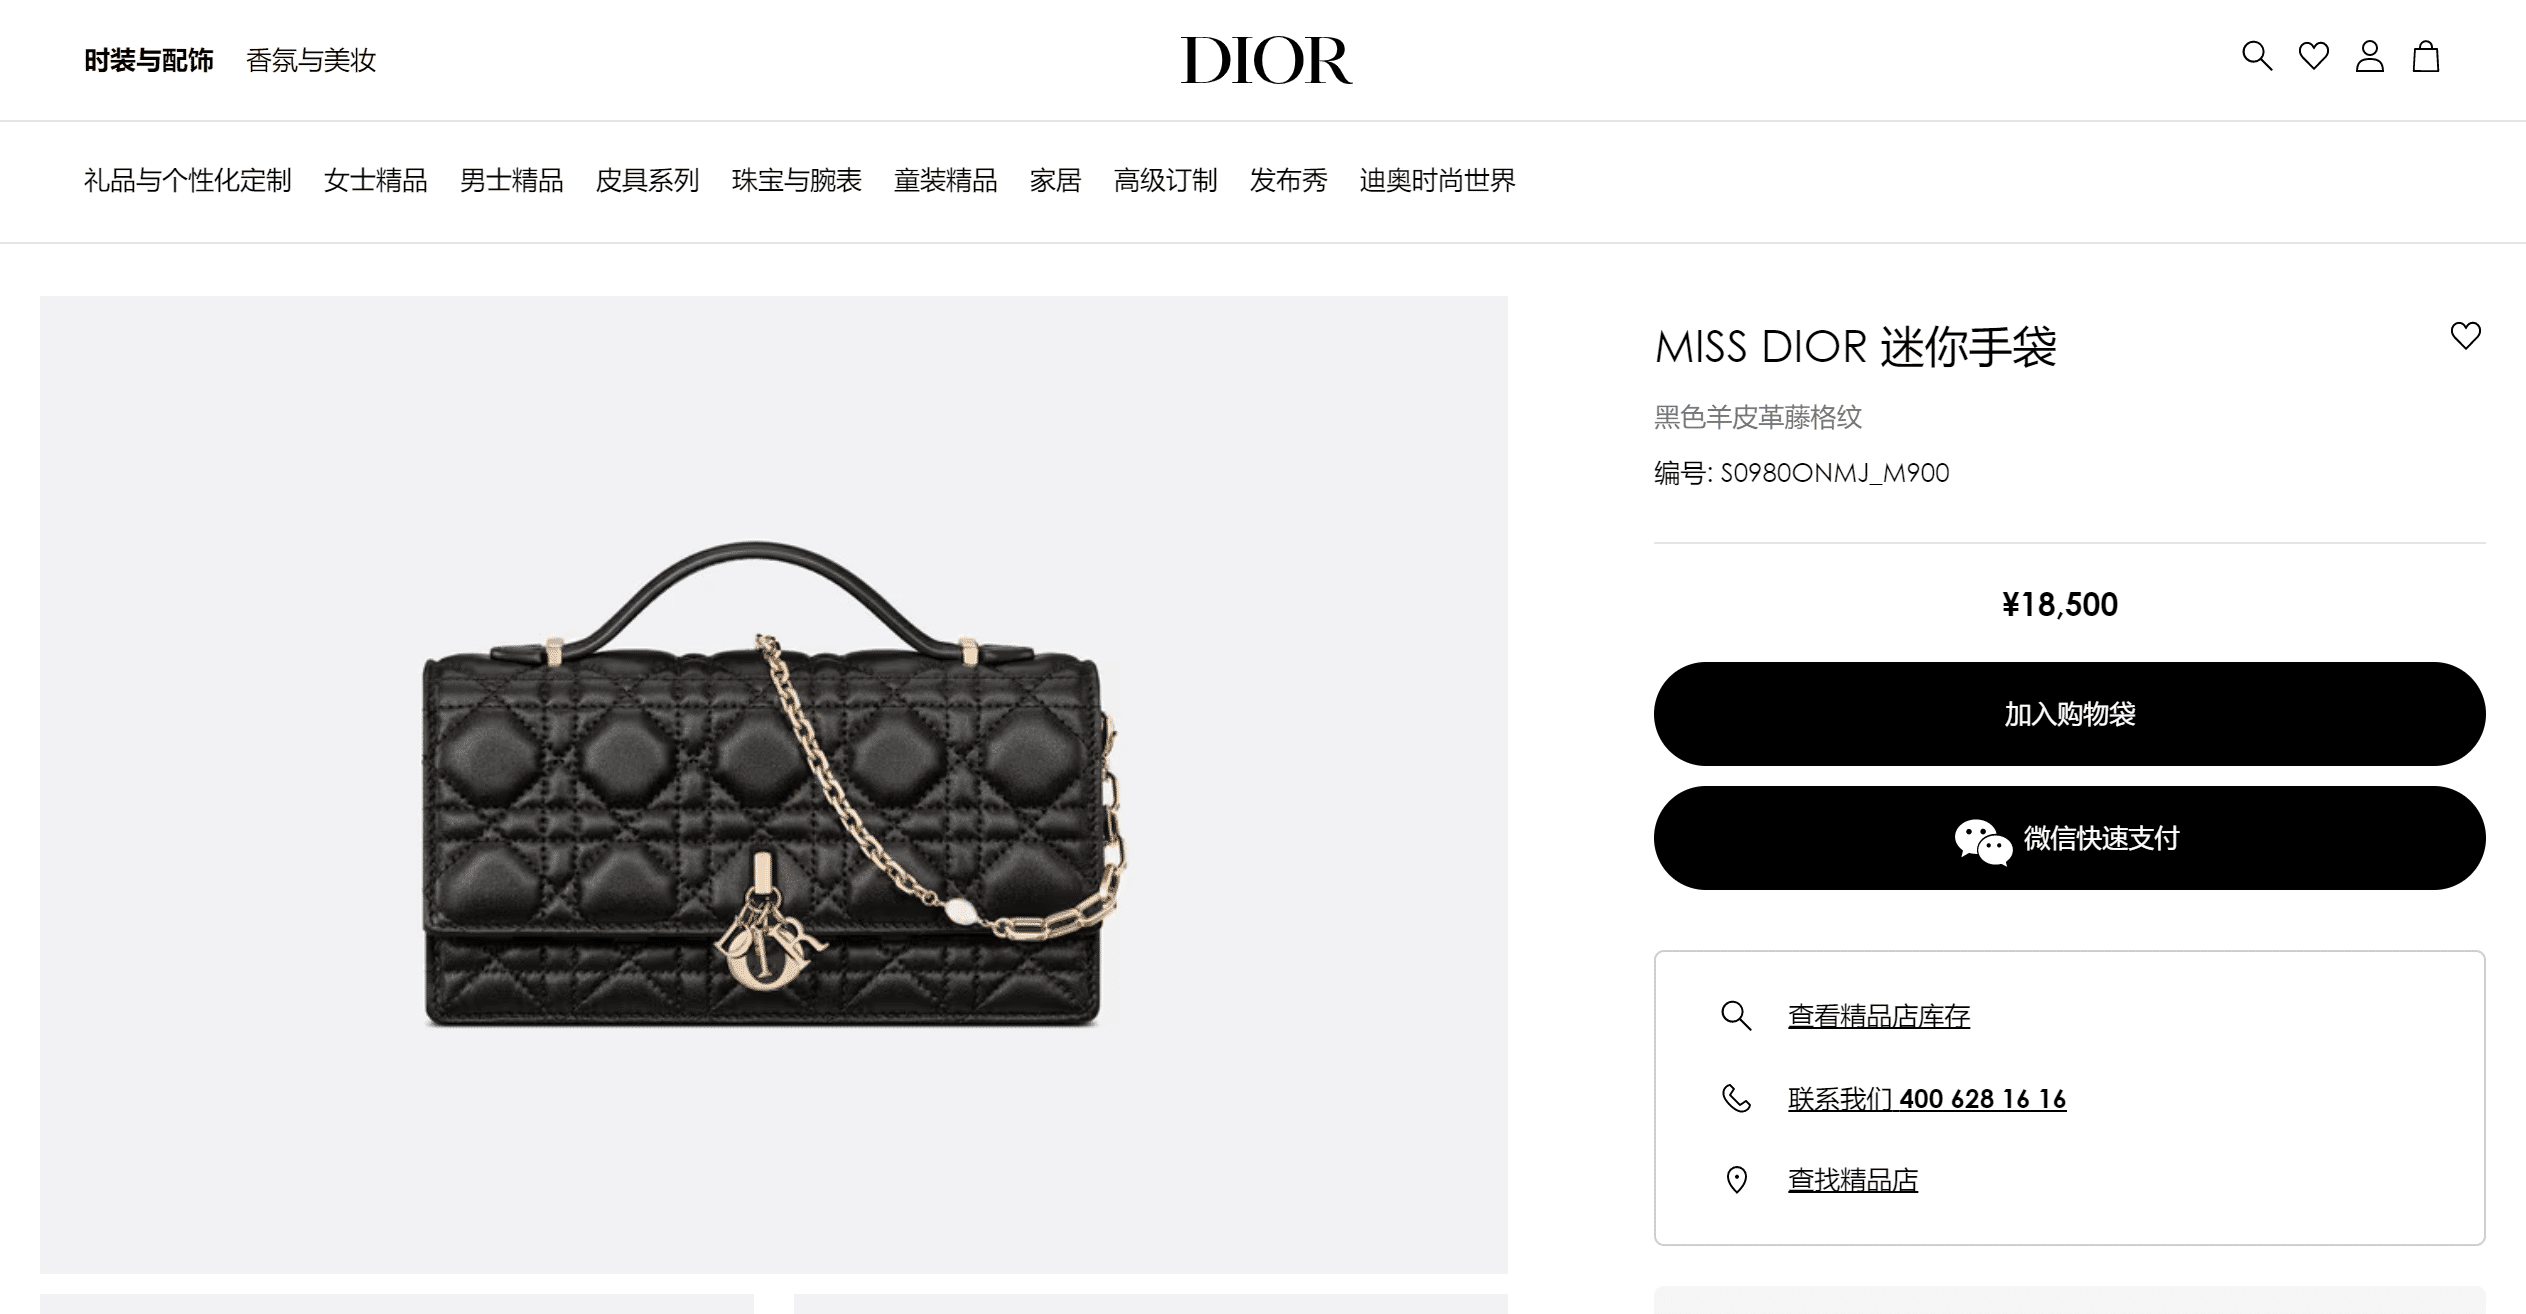 Miss-Dior---DIORb2bdd9457316c1f3.png